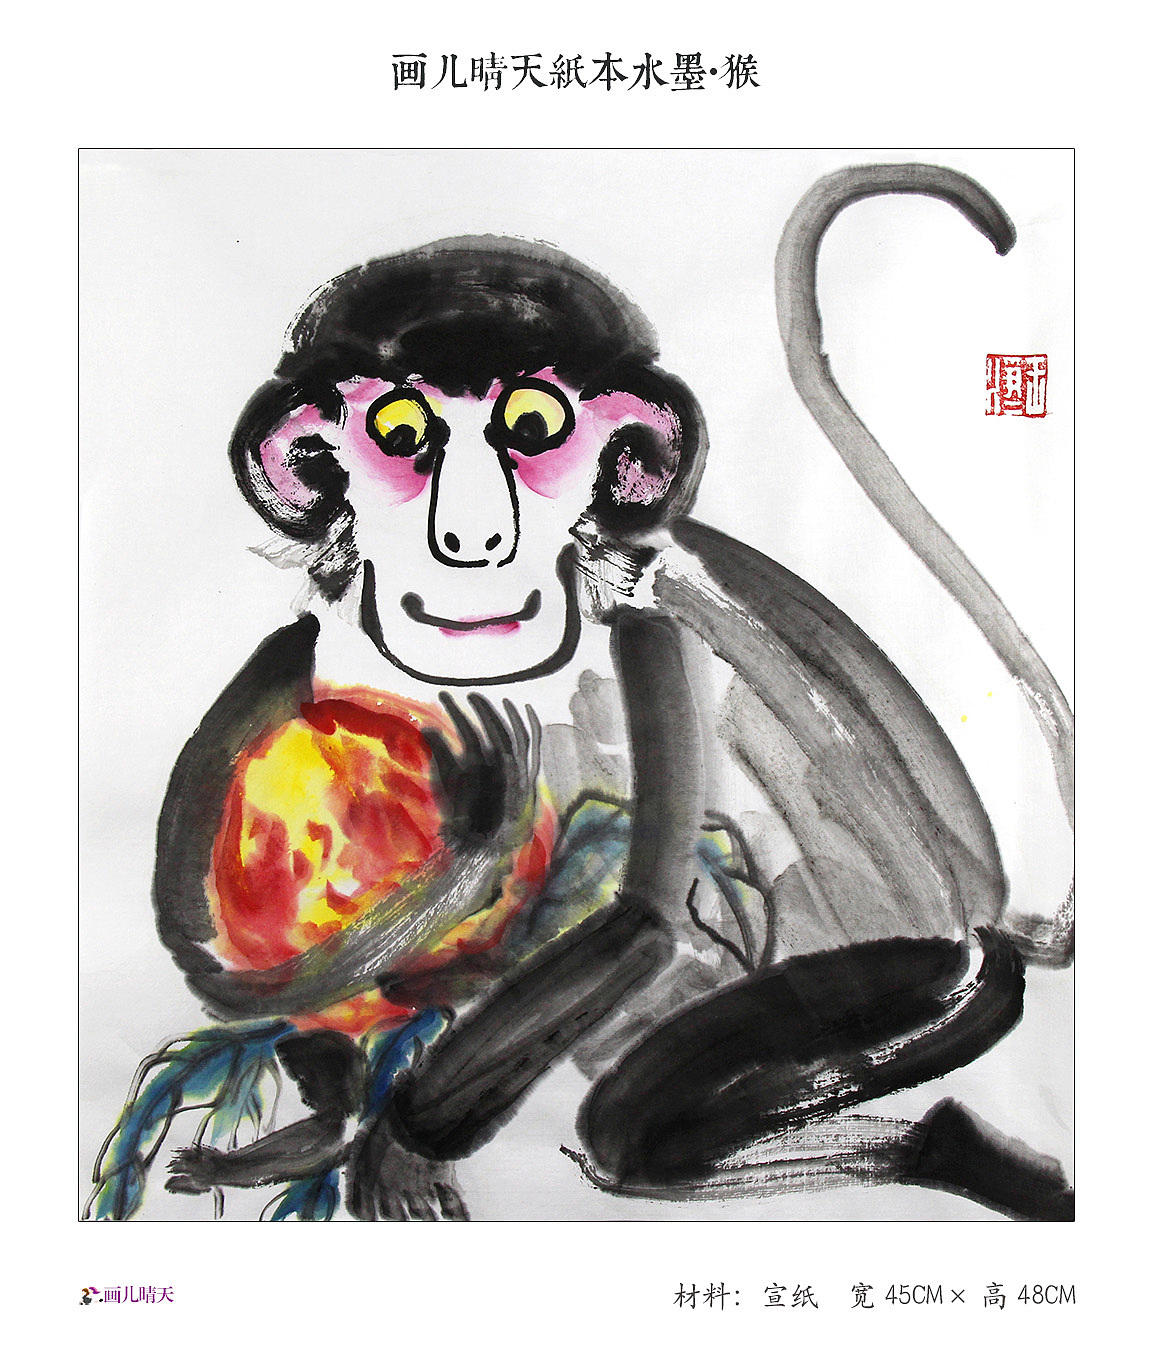 卡通小猴子图片素材免费下载 - 觅知网